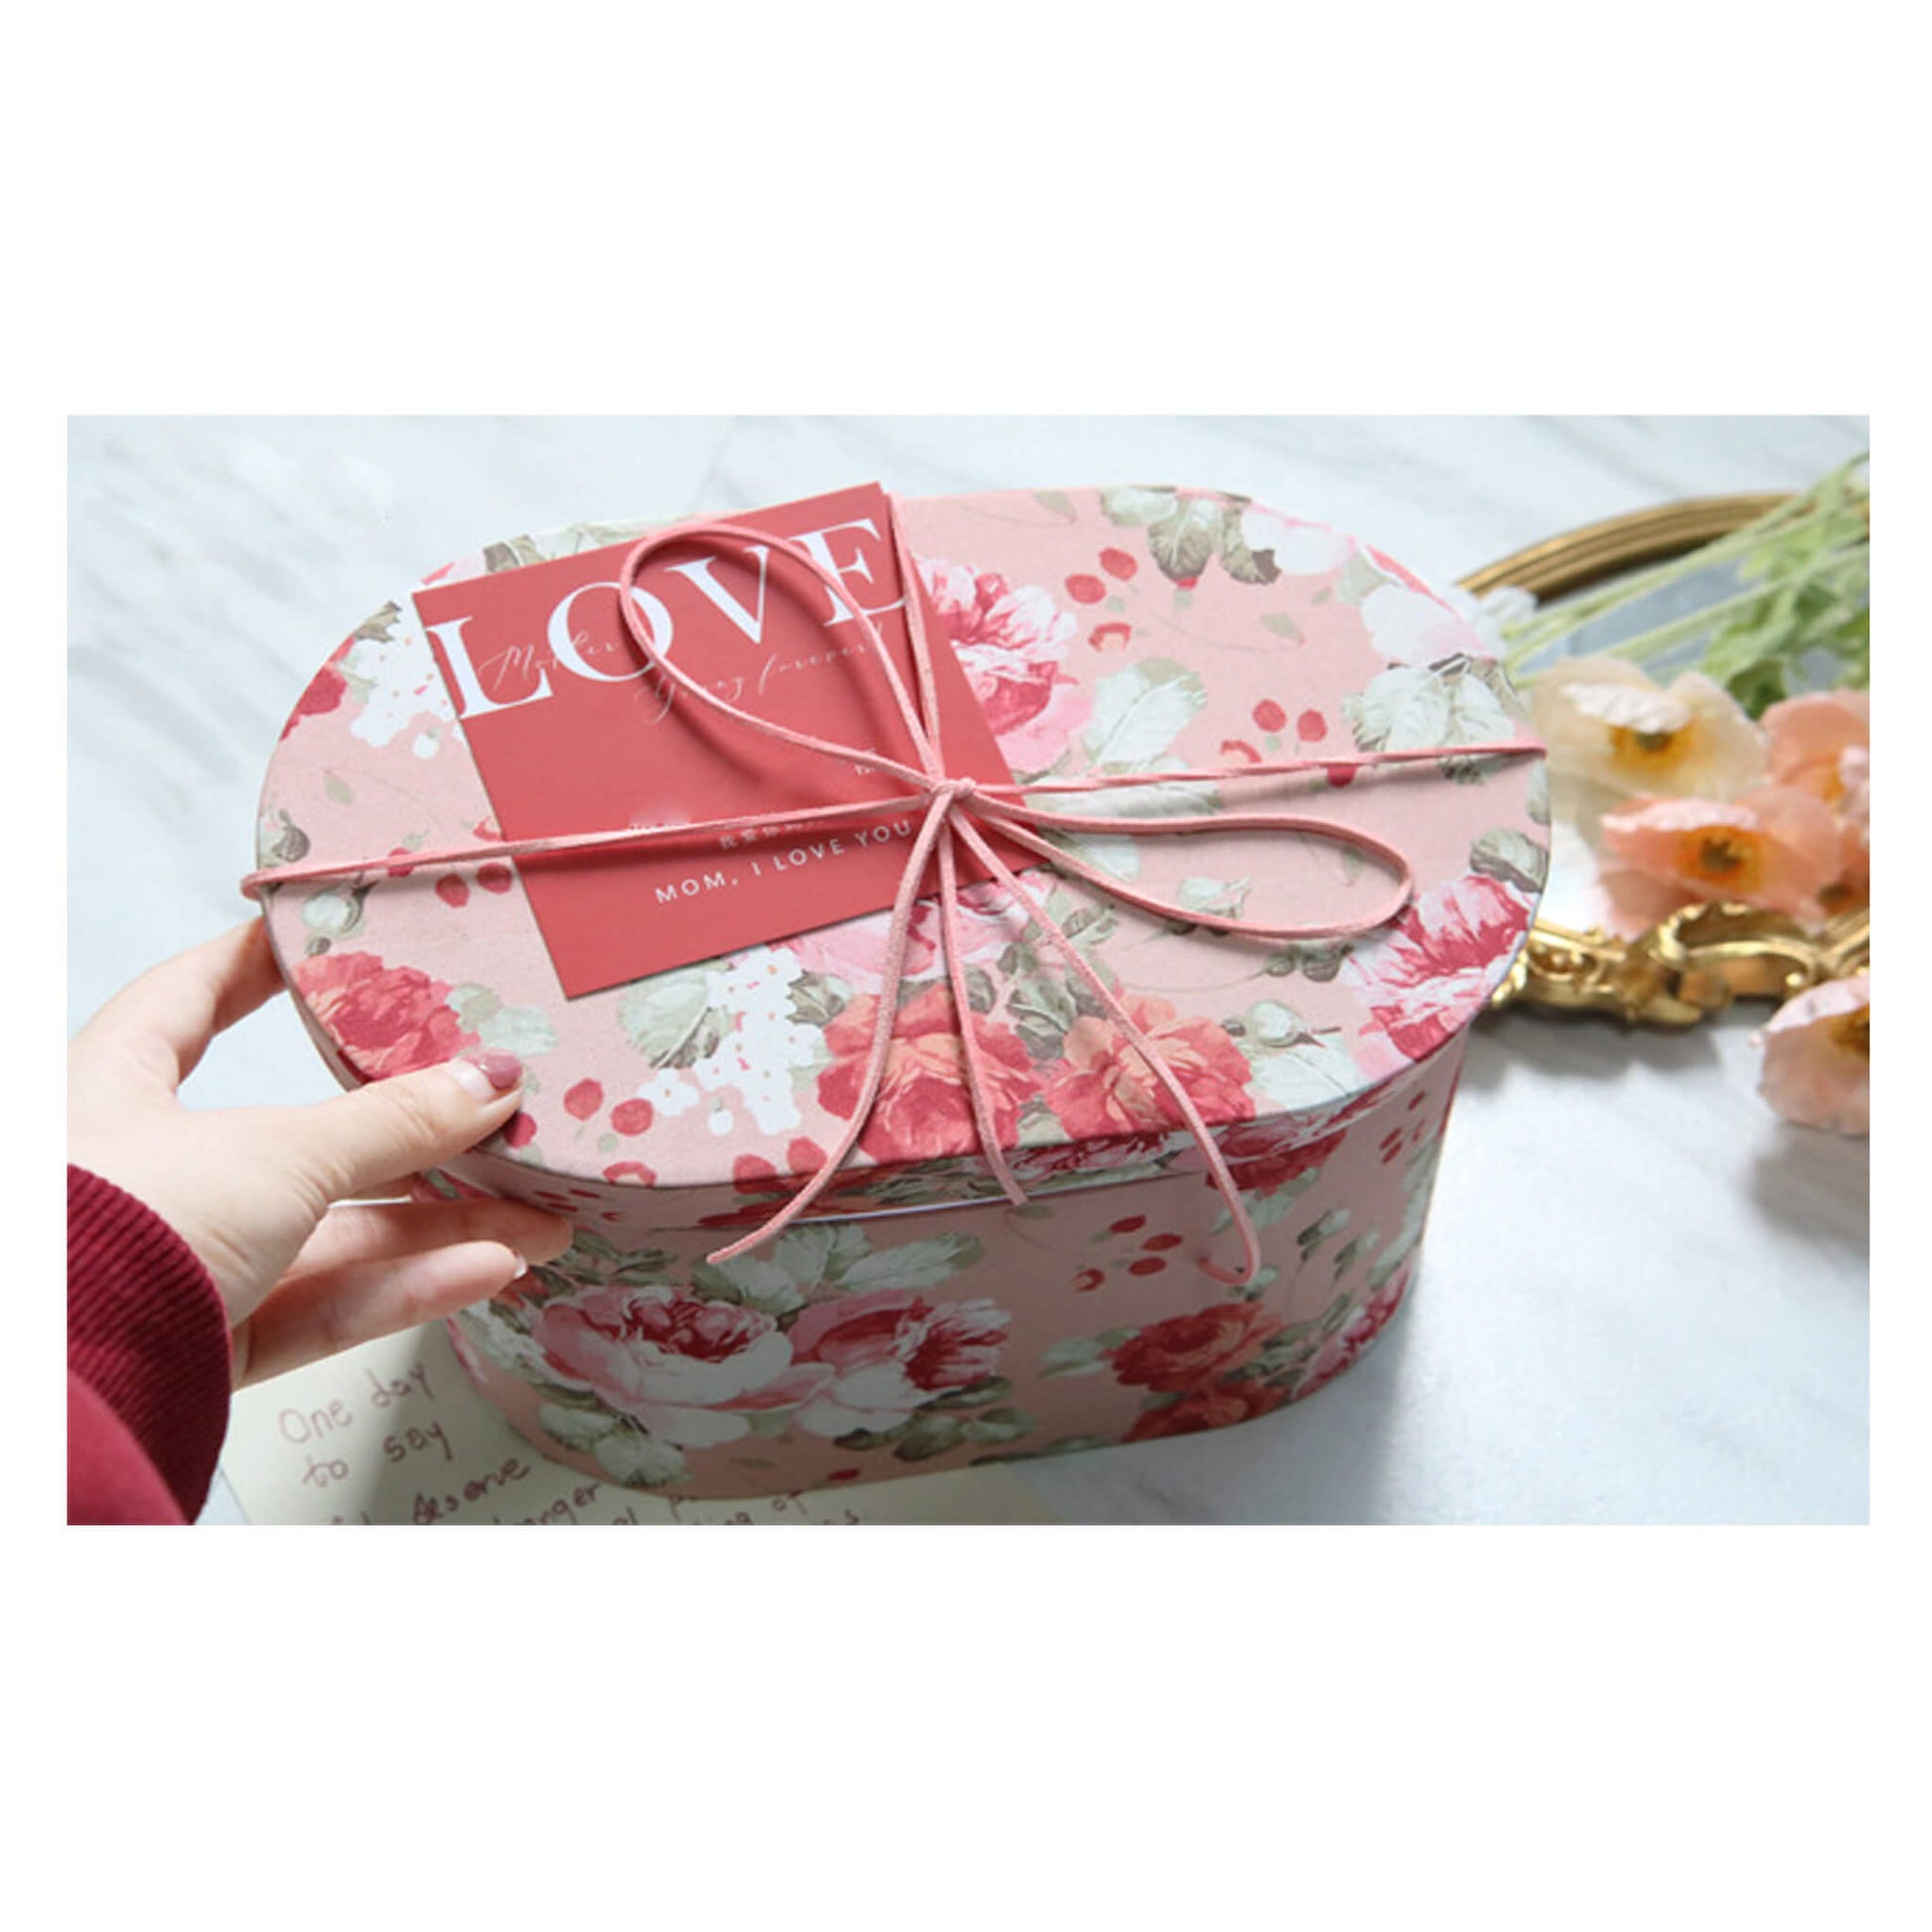 The Flower Box Arrangements - Fantak Box Supplies – Fantak Packaging